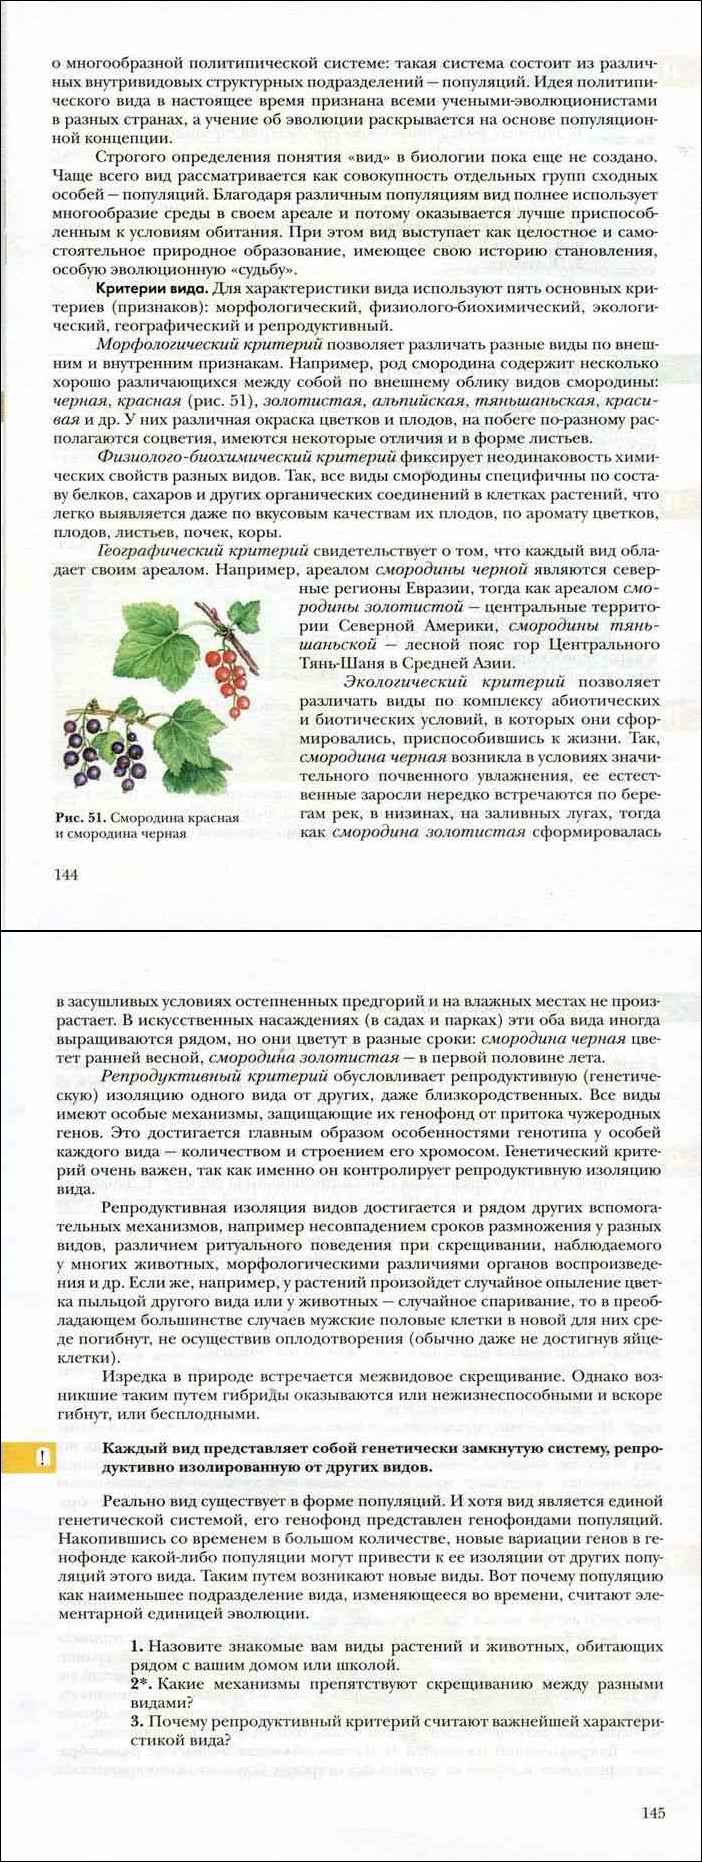 Биология 9 класс пономарева корнилова чернова учебник. Учебник по биологии 9 класс Пономарева Корнилова Чернова читать.